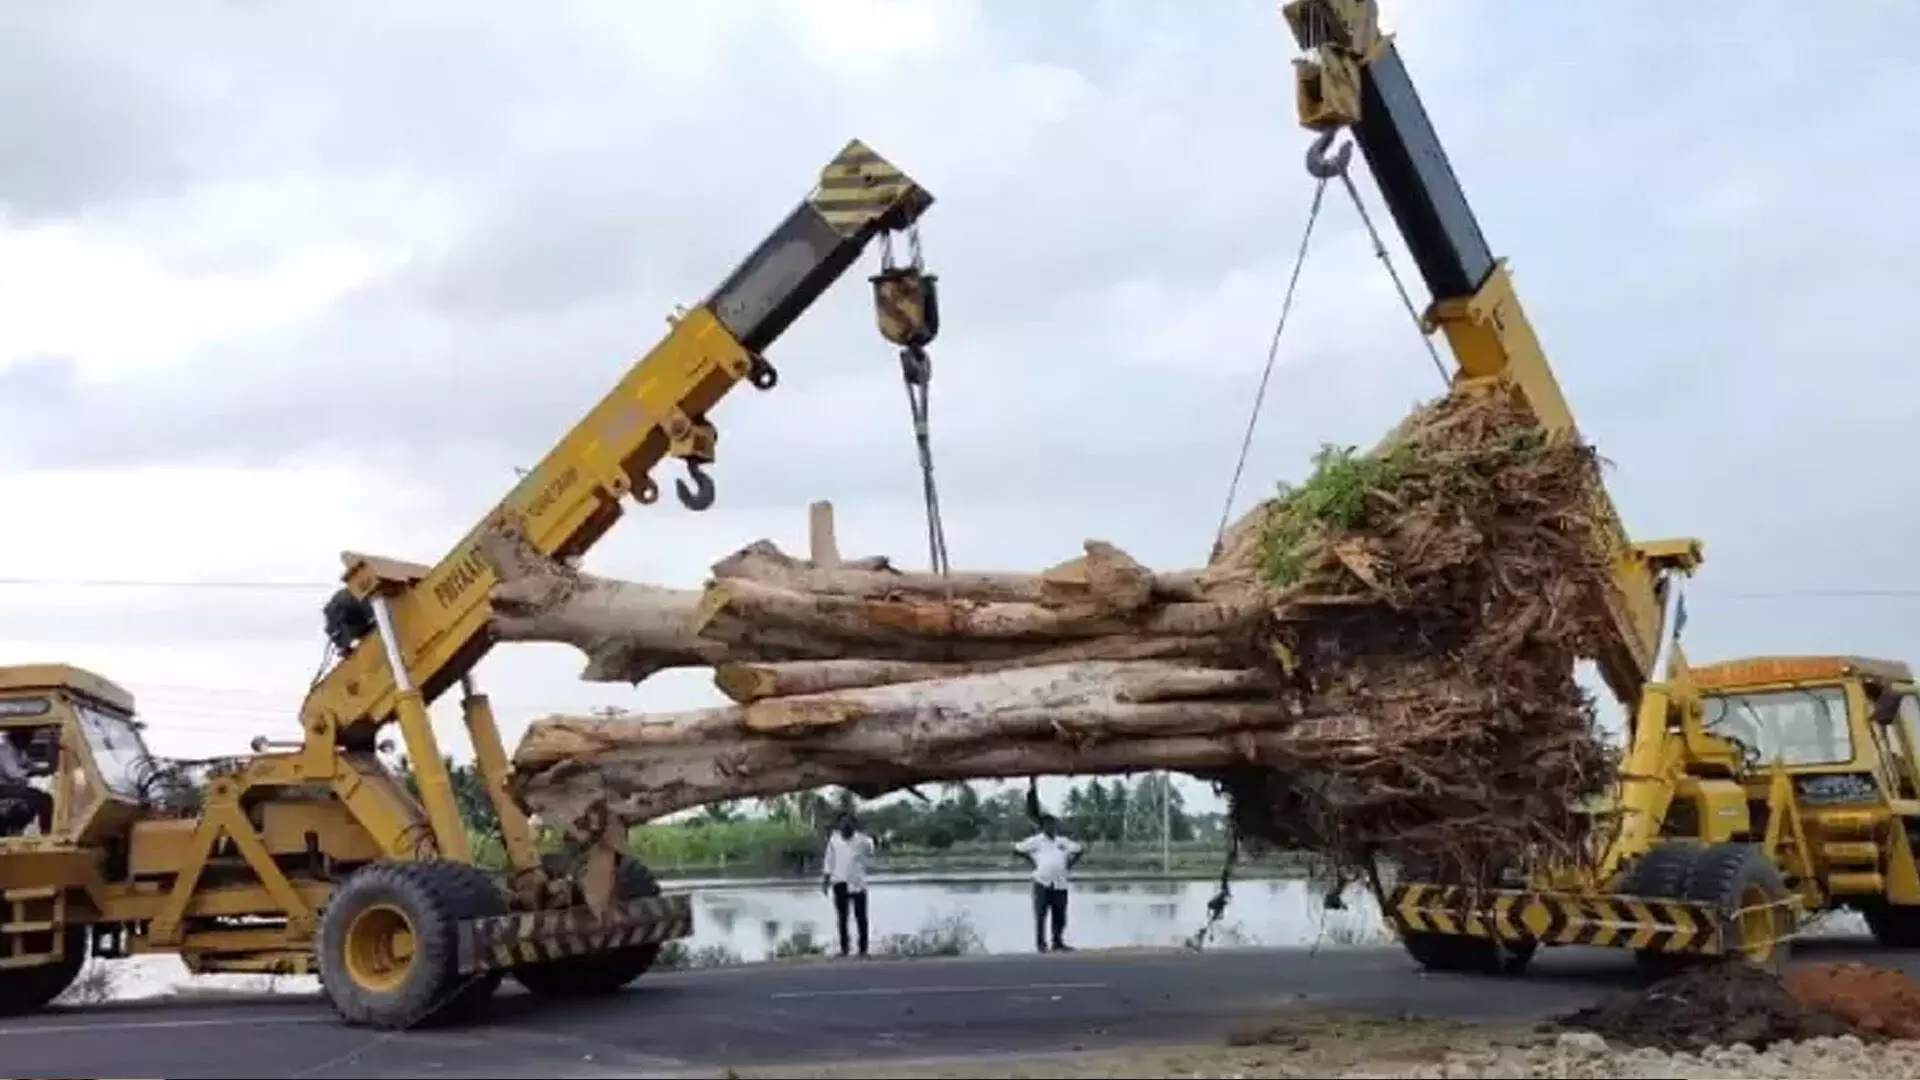 कांचीपुरम निवासी 50 साल पुराने पेड़ को कुल्हाड़ी से बचाने के लिए एक साथ आए